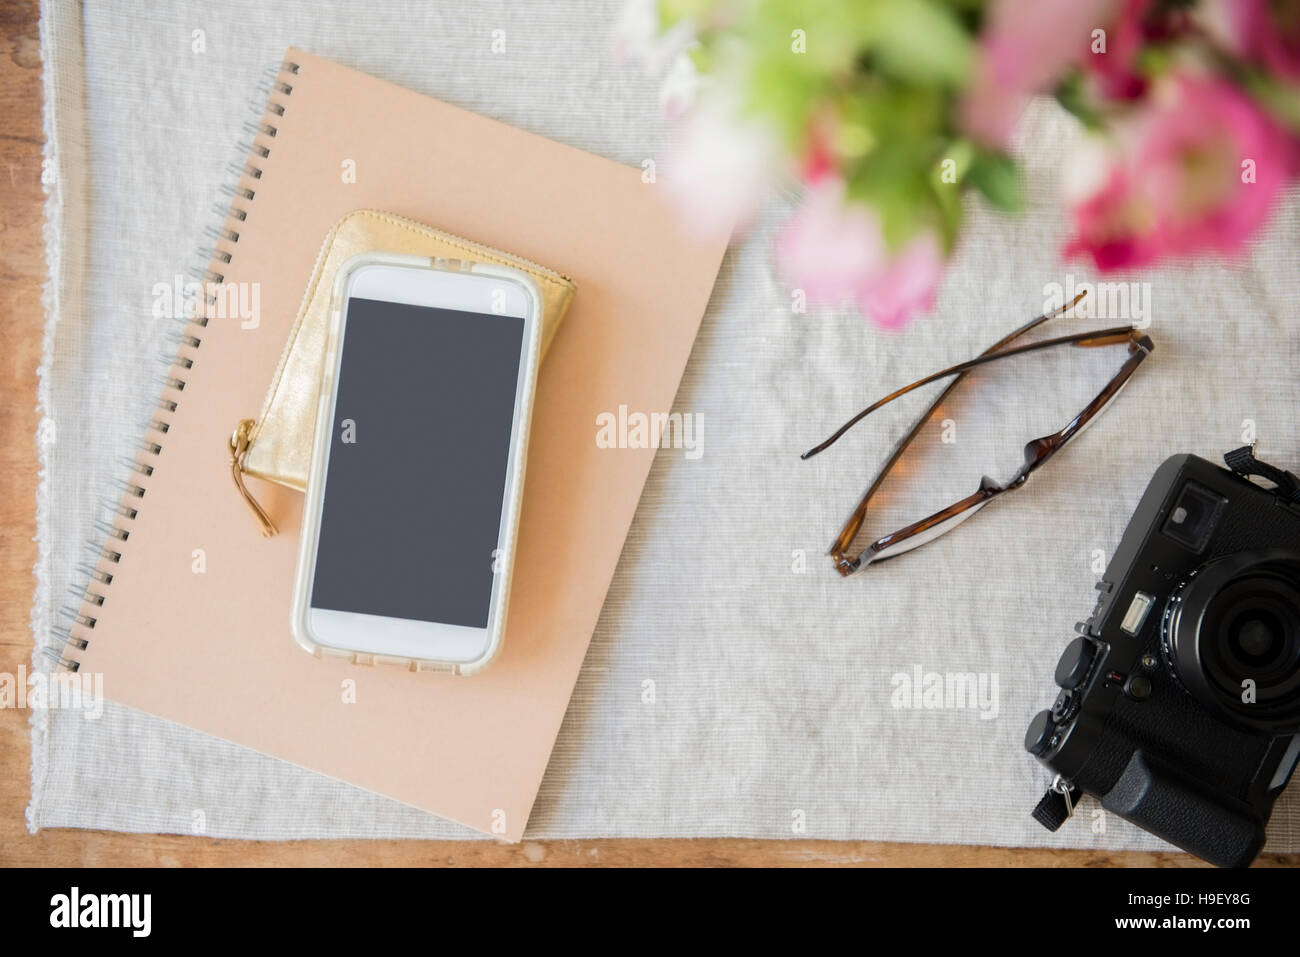 Fotocamera, telefono cellulare, portamonete, notebook e portafoglio sul tavolo Foto Stock